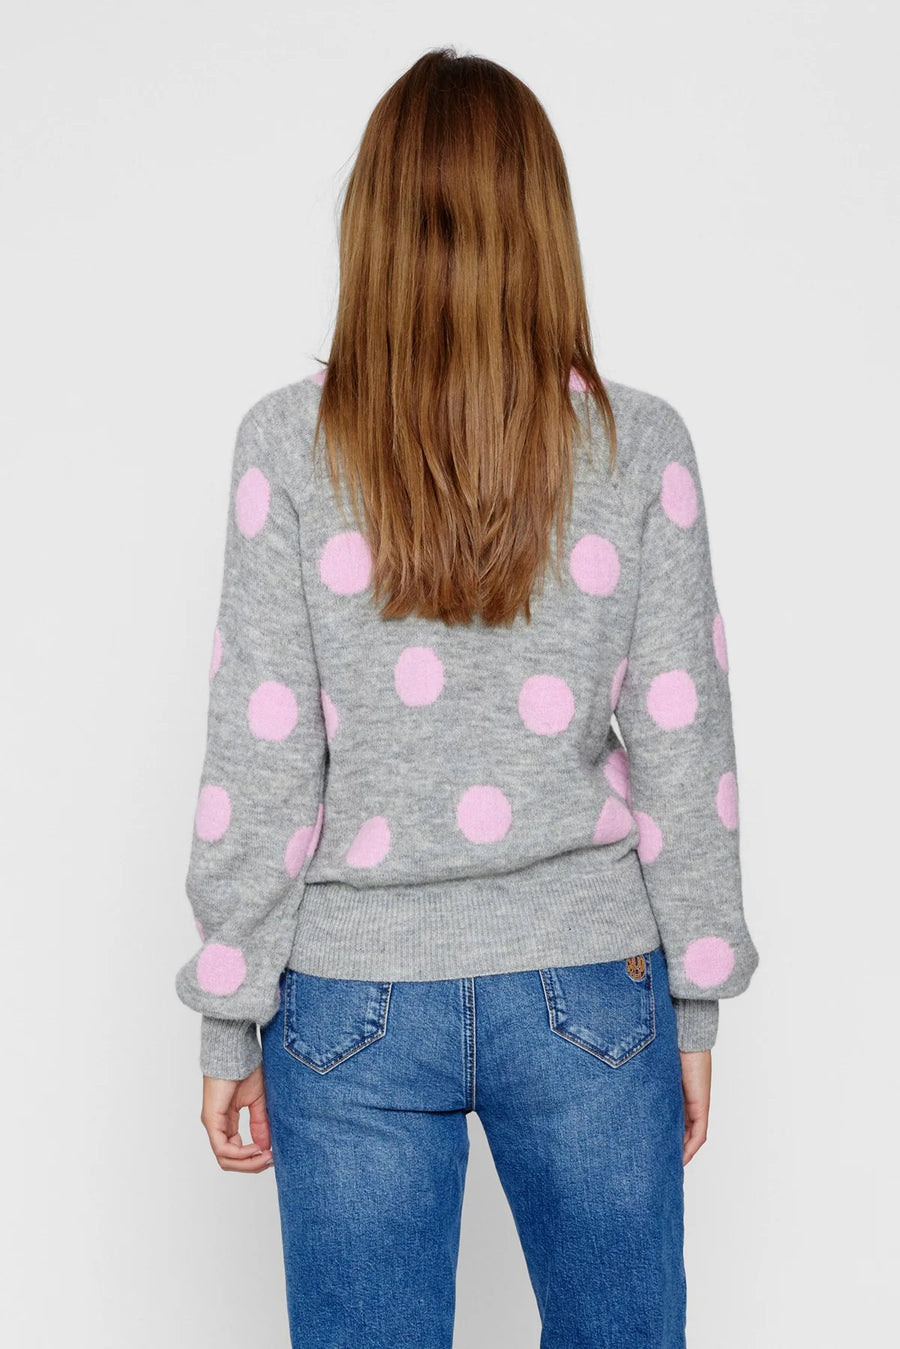 Nümph Nuellen Pullover pink frosting, grau mit rosa Punkten